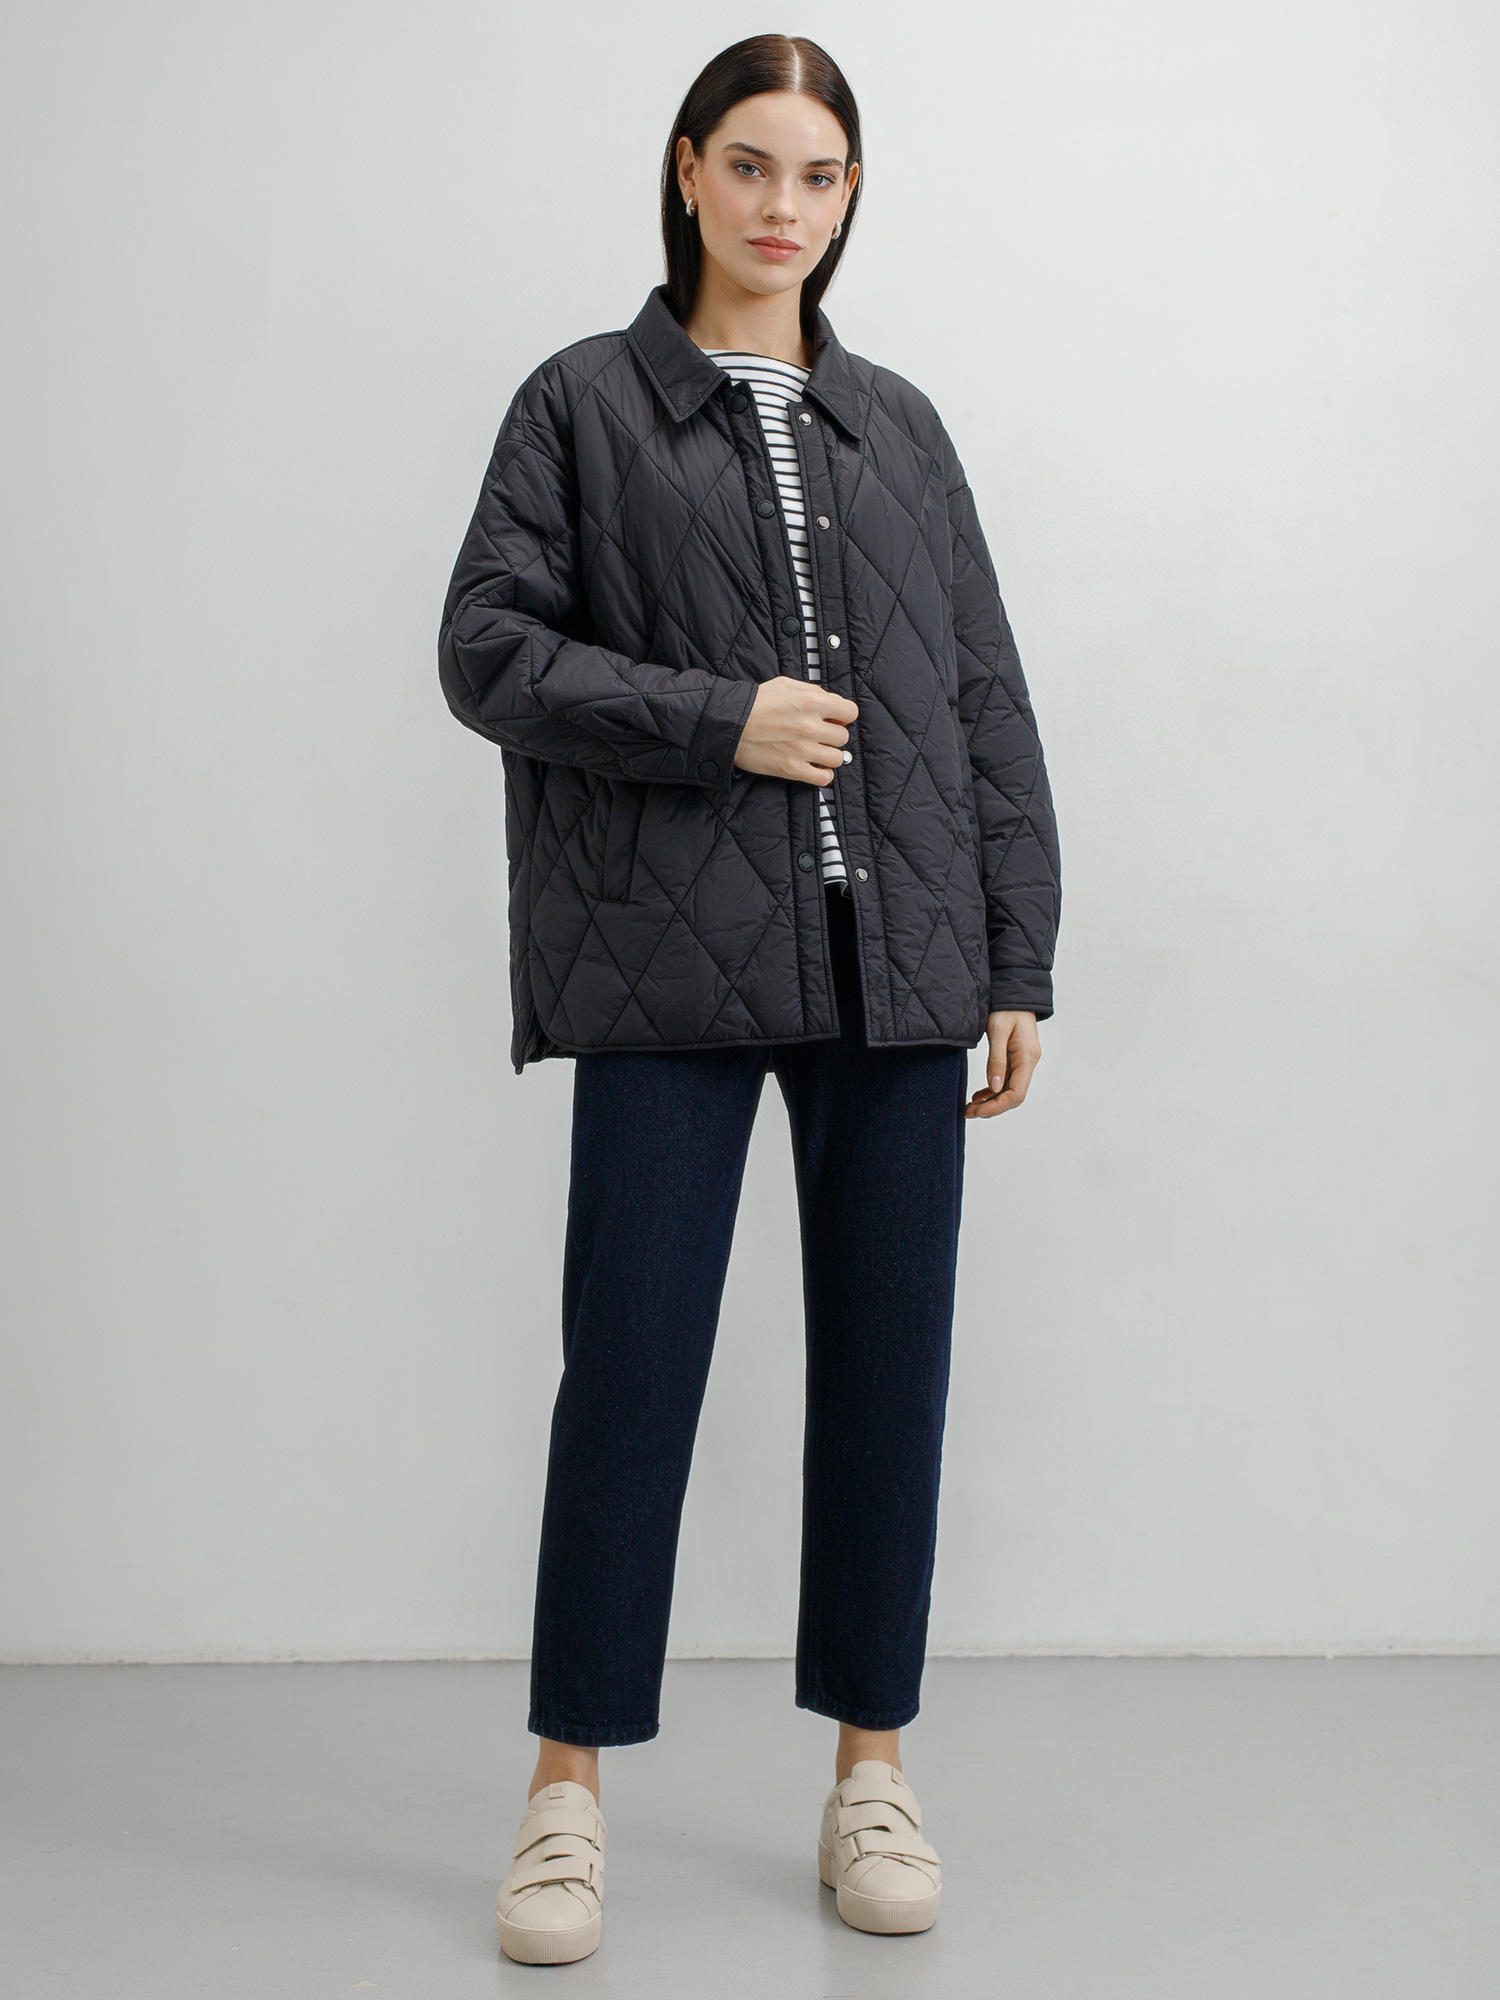 Женская стеганая куртка Soft Nylon. Изображение 2